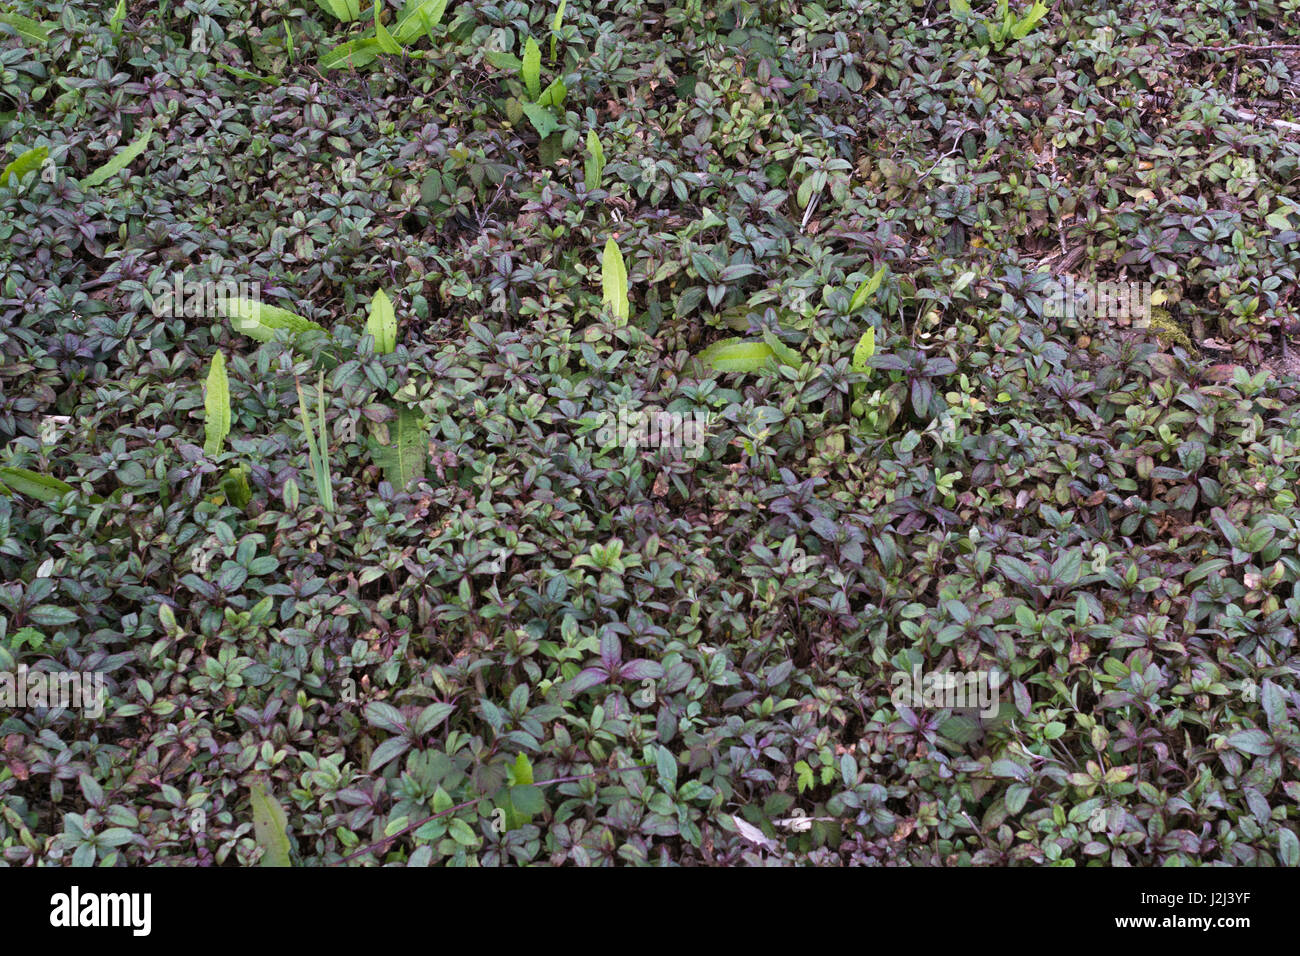 Jóvenes pre-floración follaje hojas / / Impatiens glandulifera Bálsamo del Himalaya. Maleza invasora de los humedales del río. Parche de malezas de germinación, malezas, invasión Foto de stock